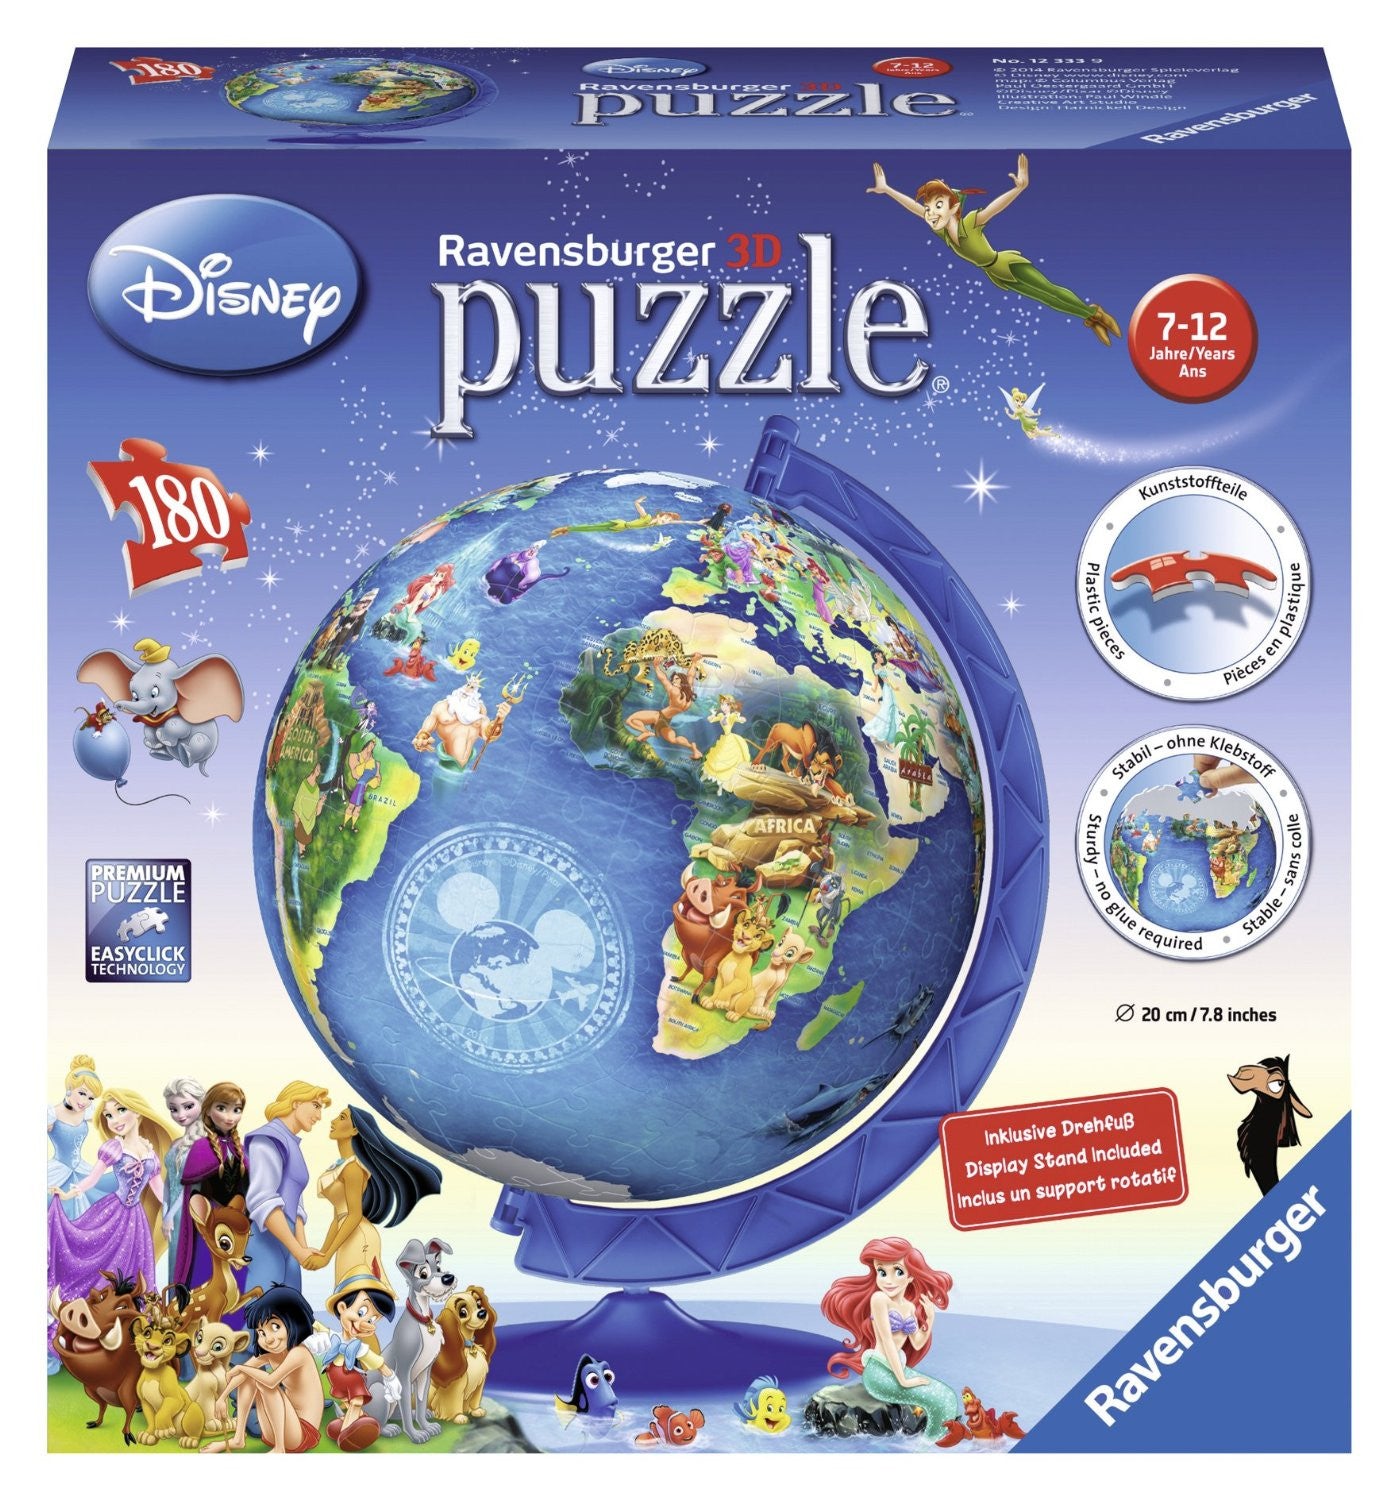 Disney Globe 180 pc. Puzzle